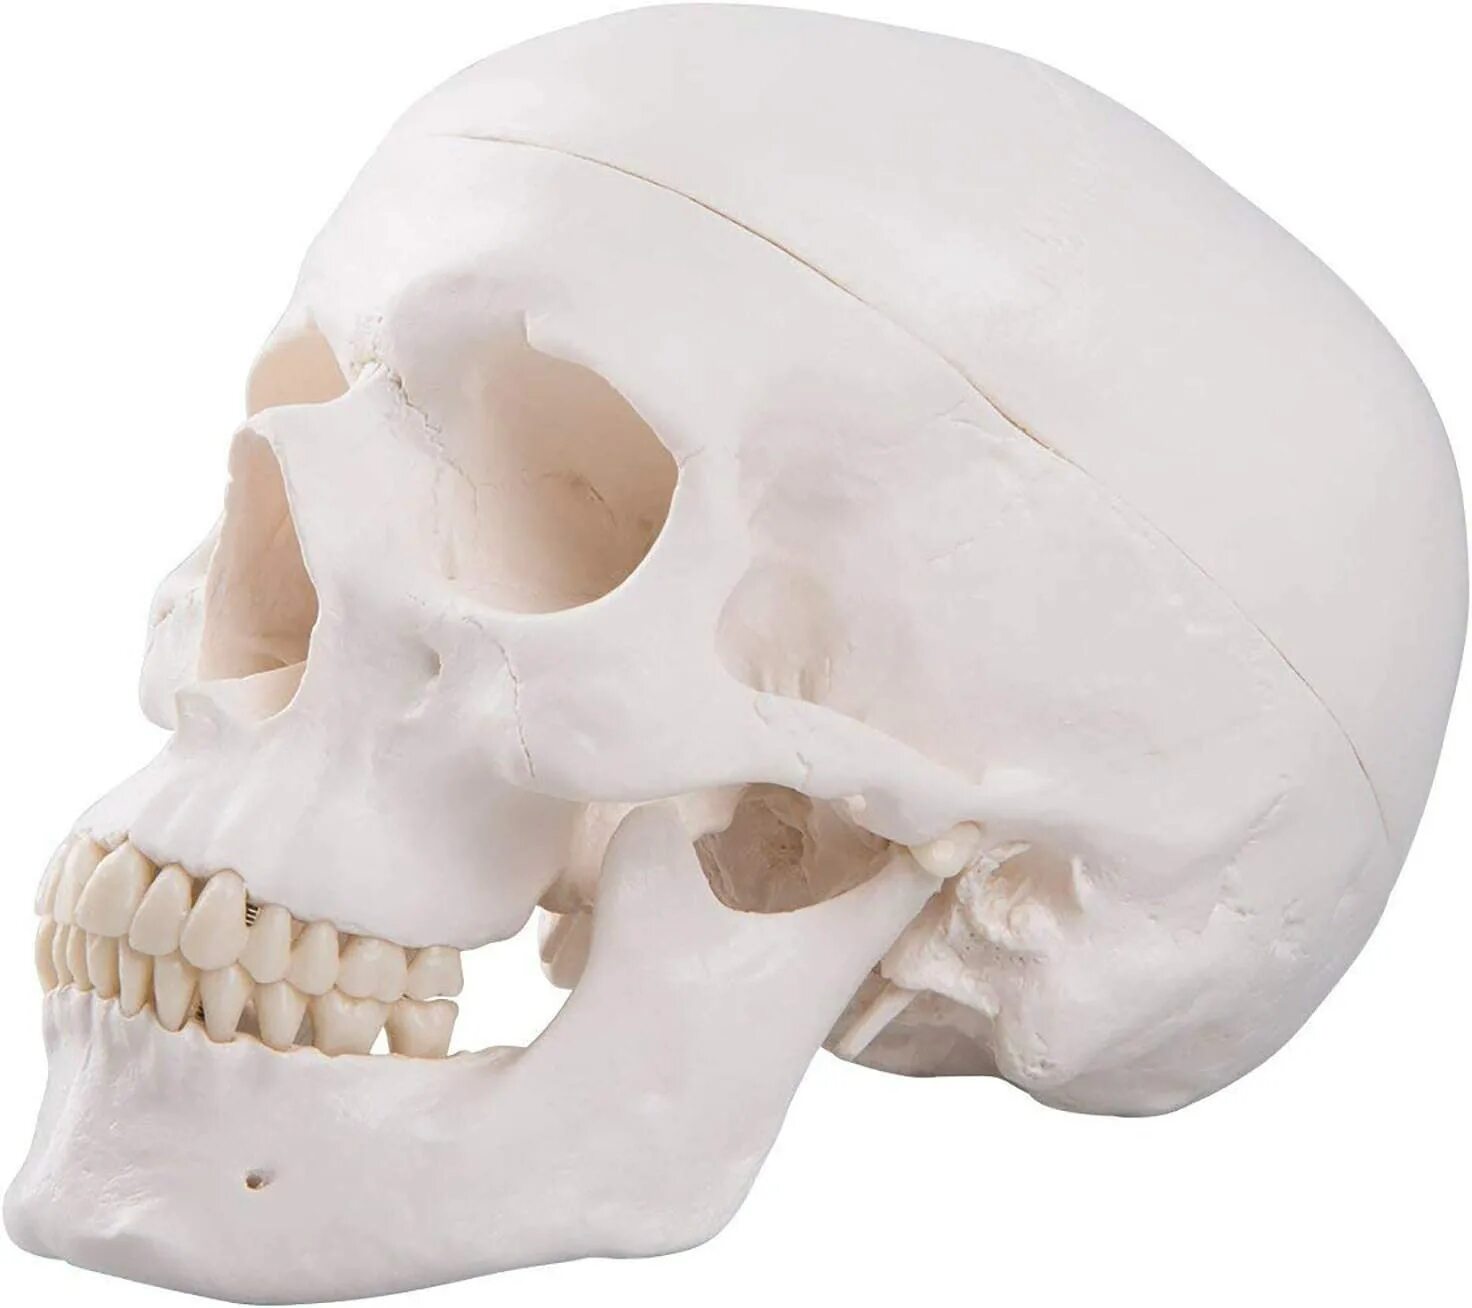 Череп человека. Кости черепа. Кости человеческого черепа. Анатомически правильный череп.